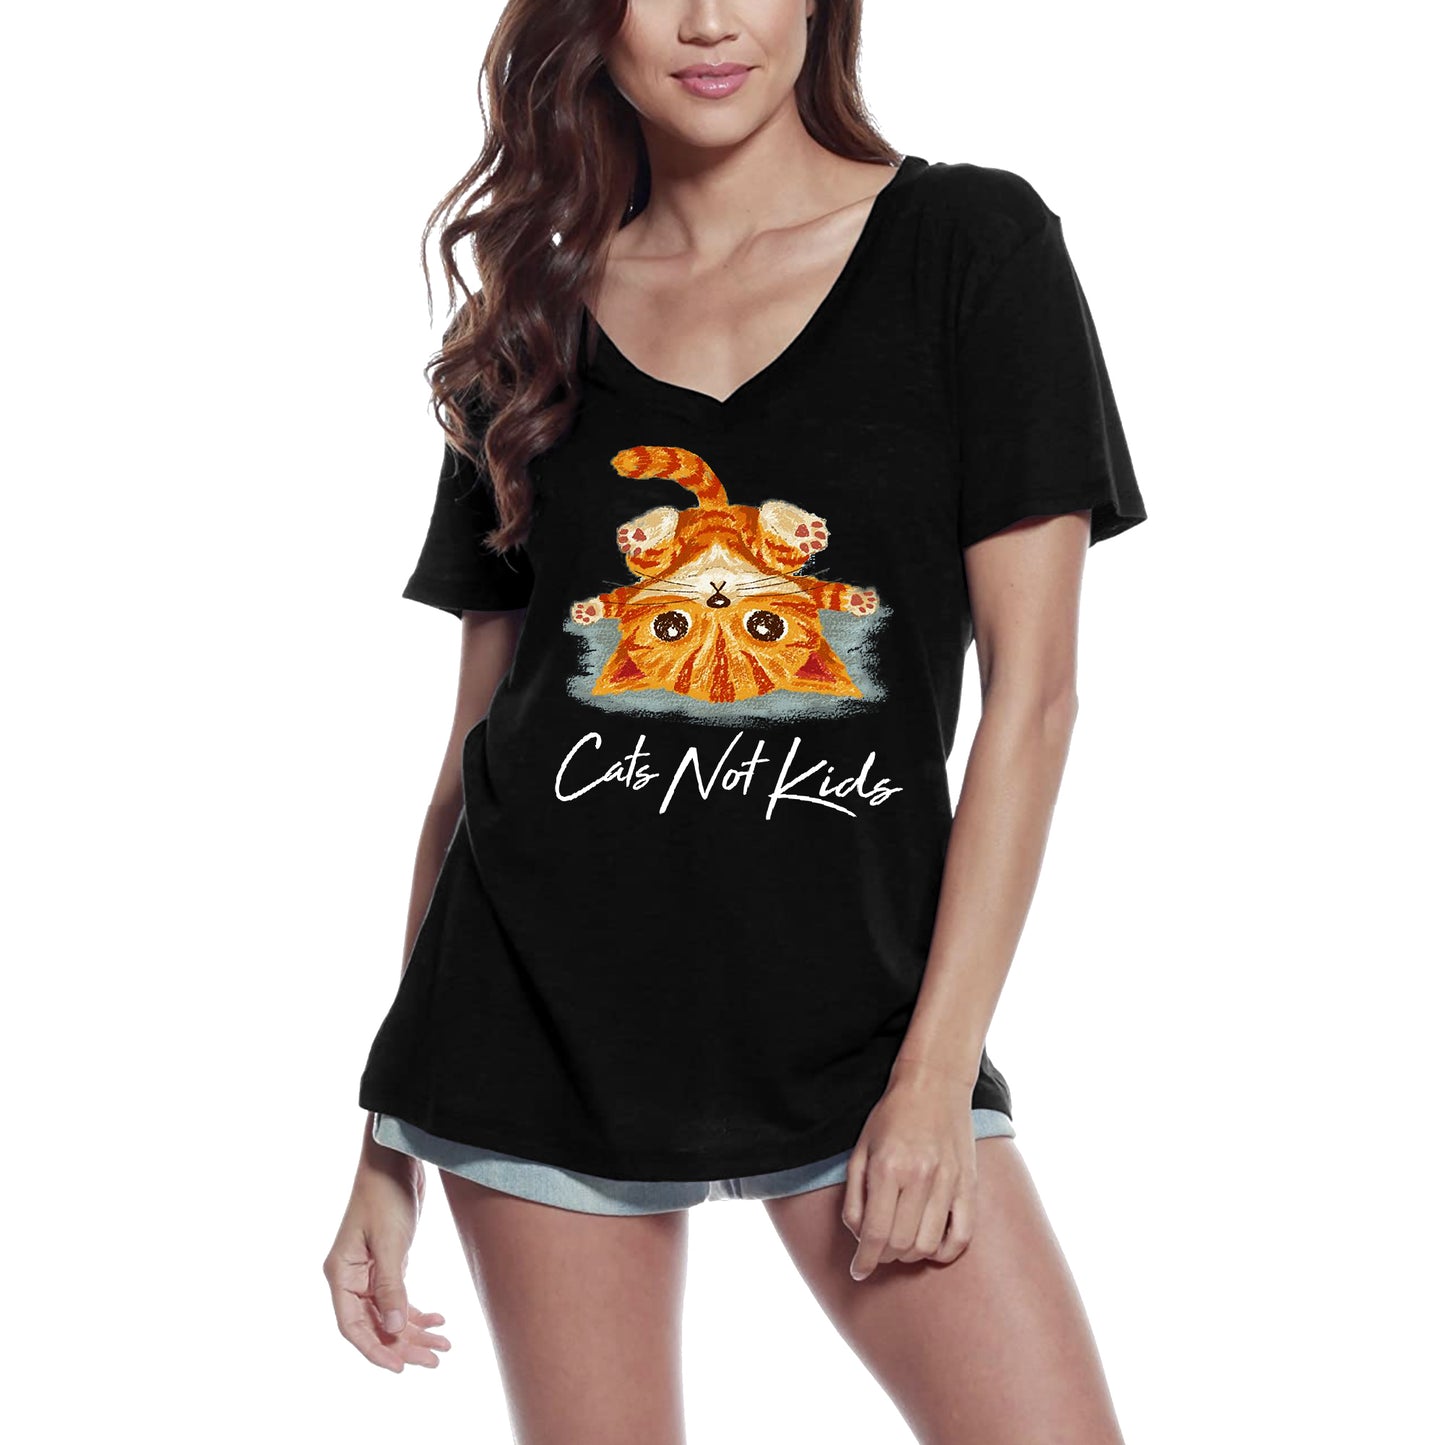 ULTRABASIC Women's T-Shirt Cats Not Kids - Funny Kitten Shirt for Cat Lovers